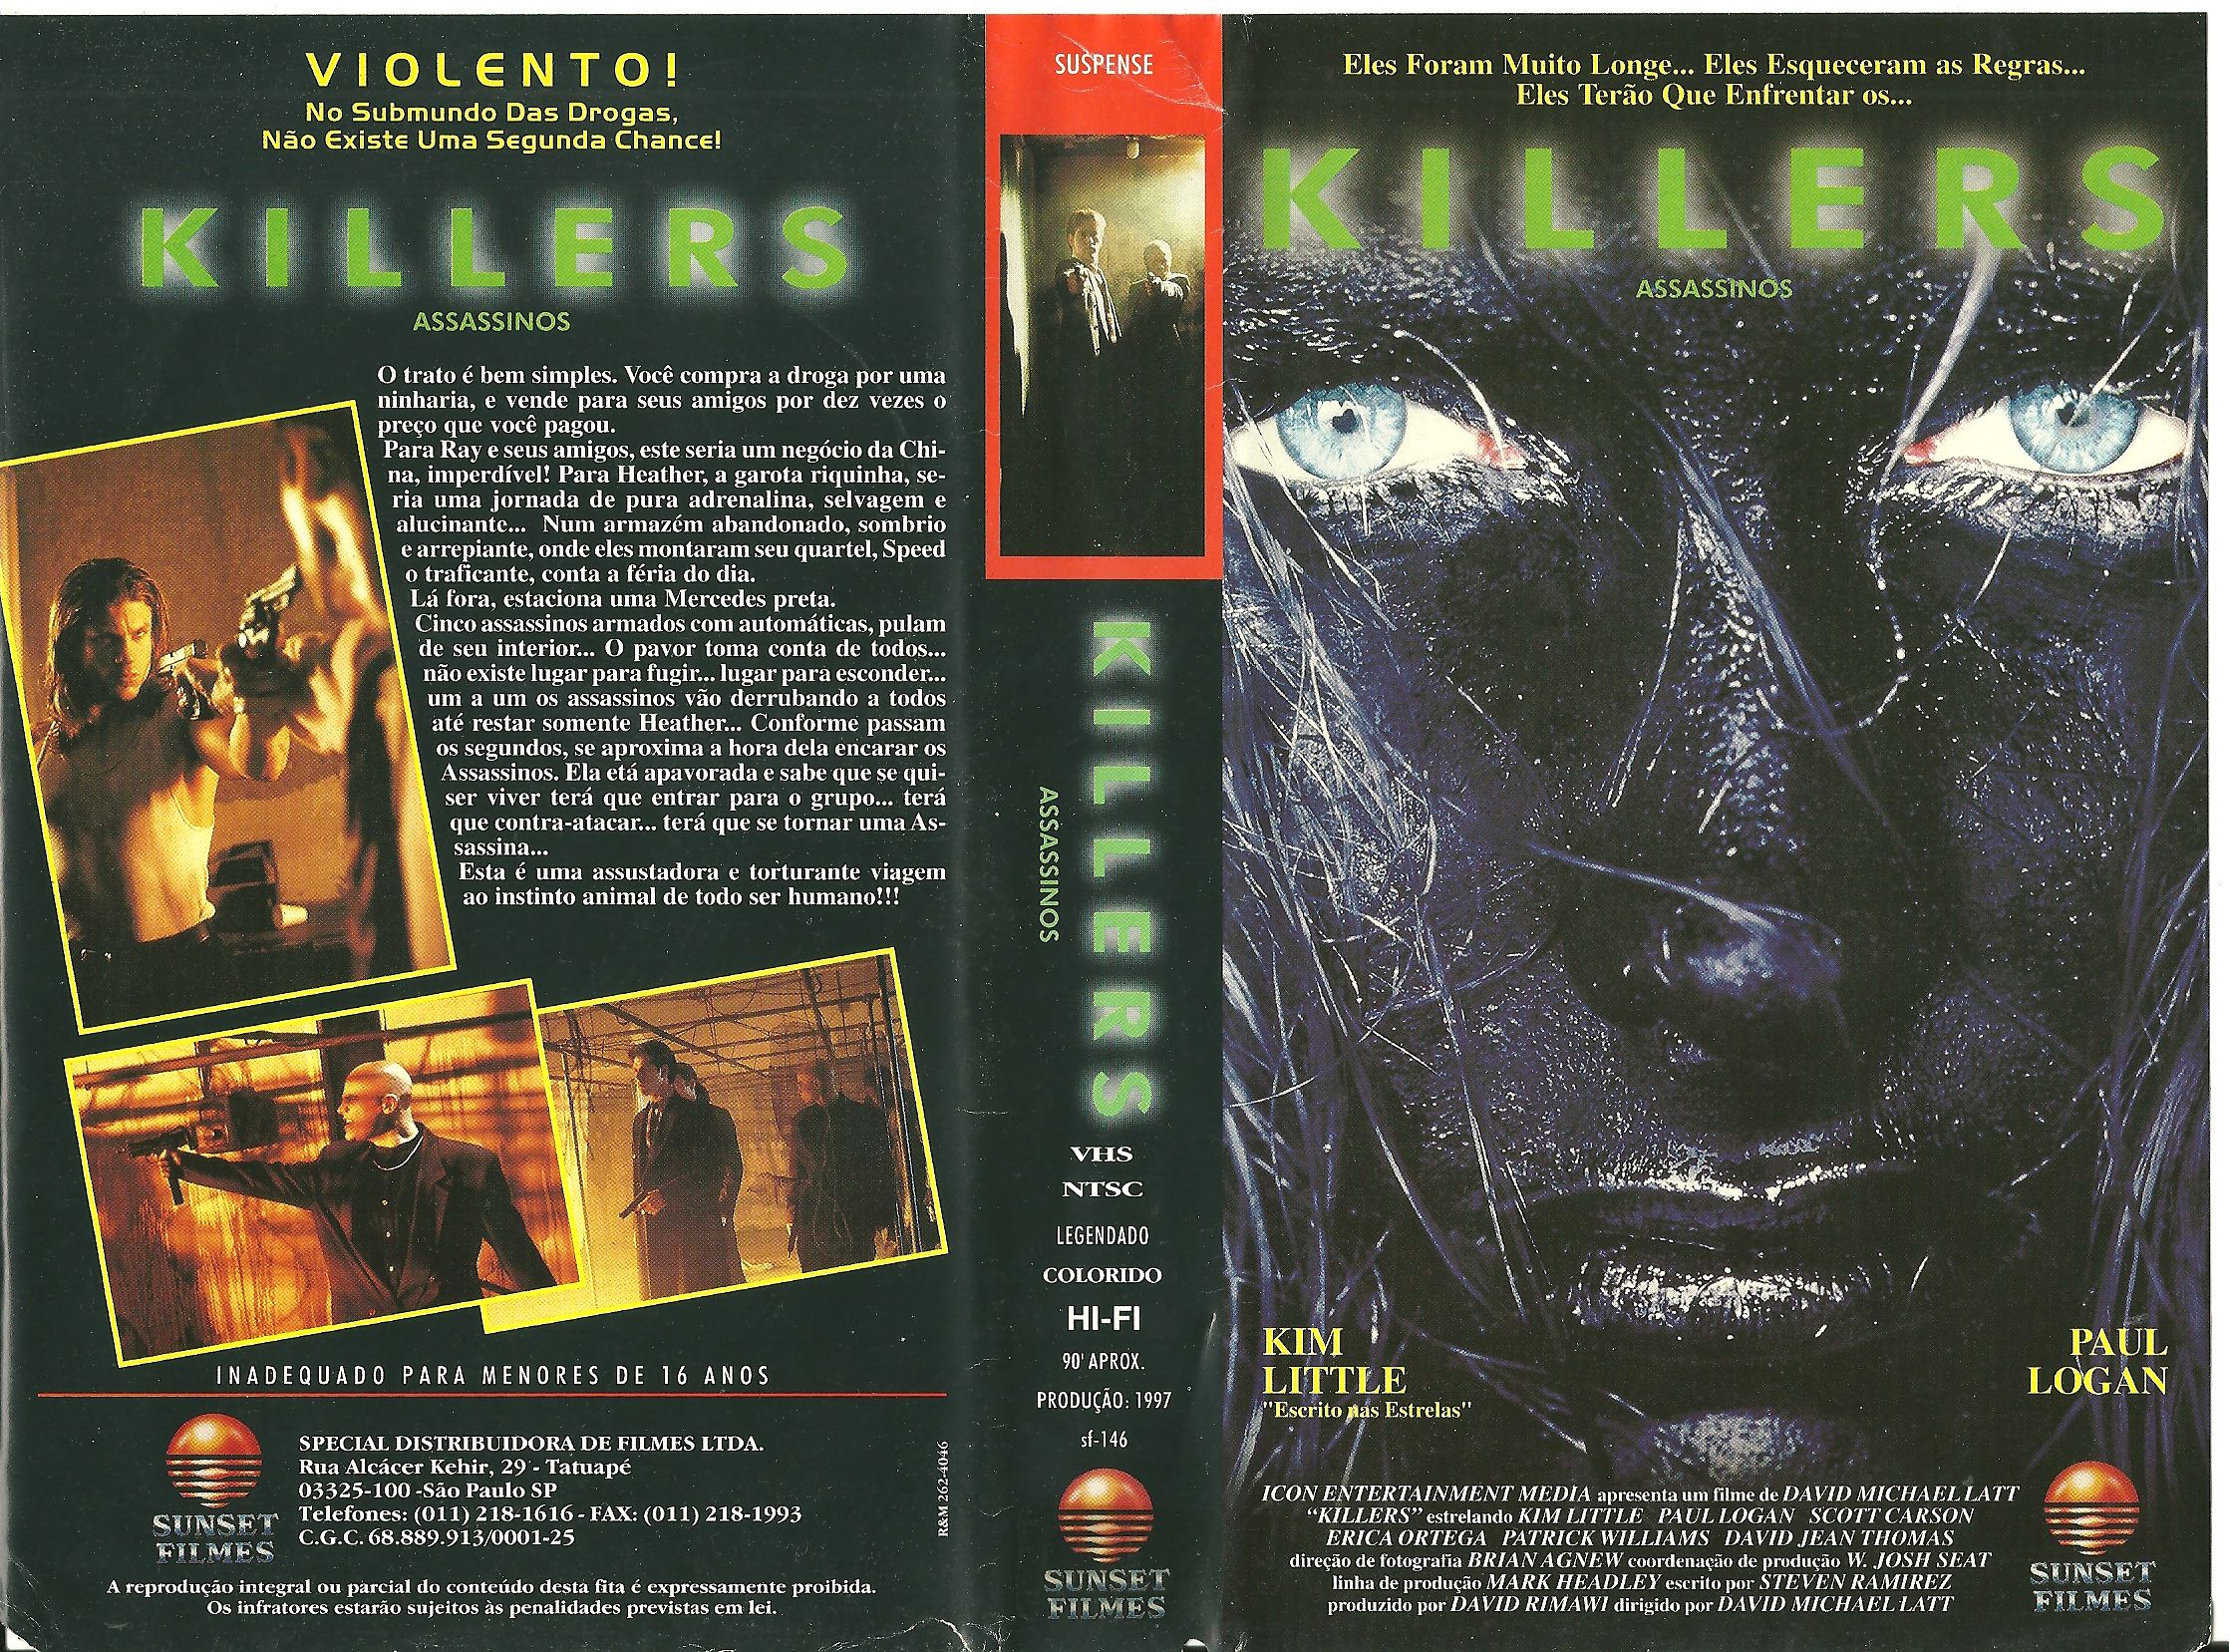 Killers (1997) Screenshot 4 